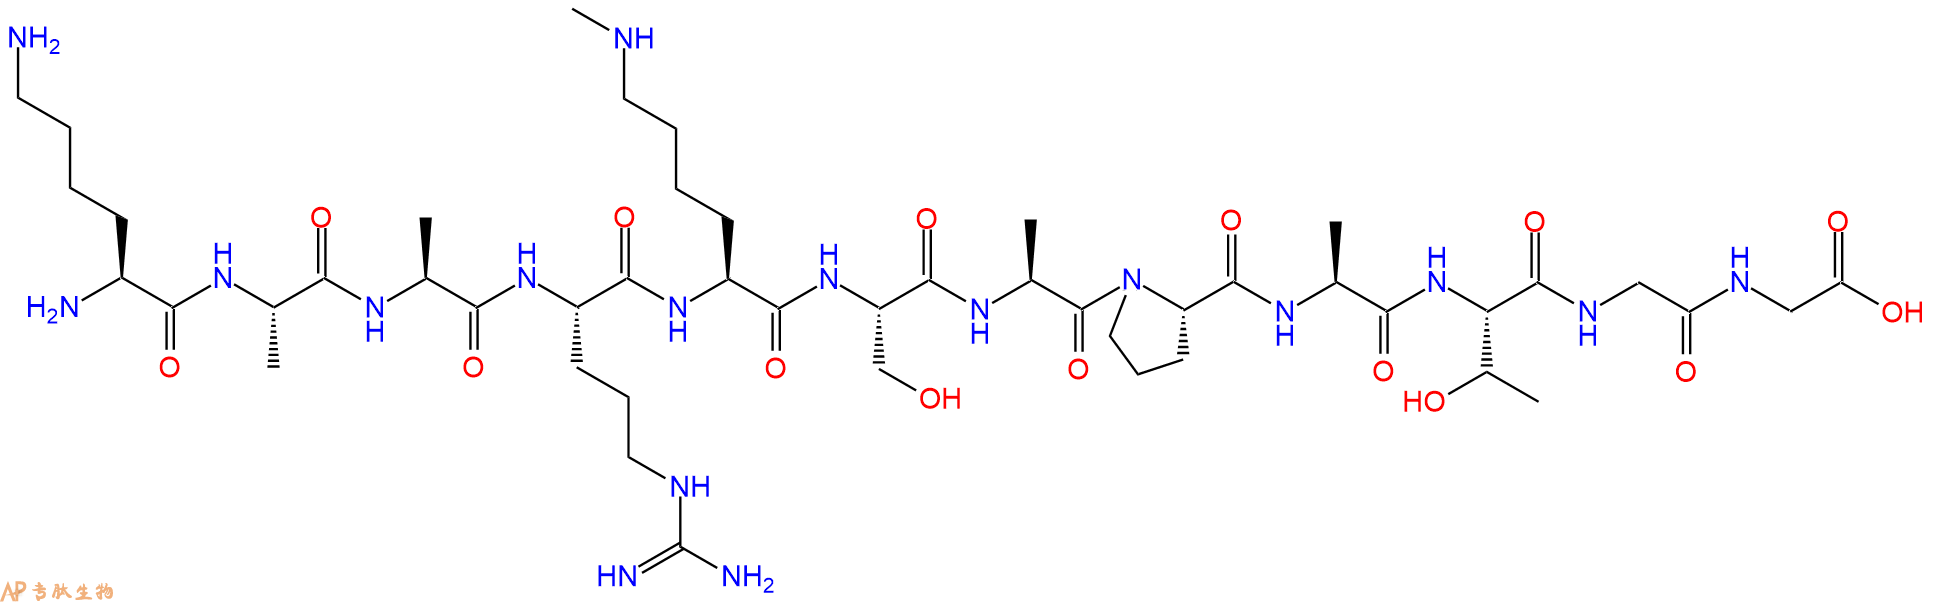 专肽生物产品组蛋白肽段[Lys(Me)27]-Histone H3(23-34), H3K27(Me1)